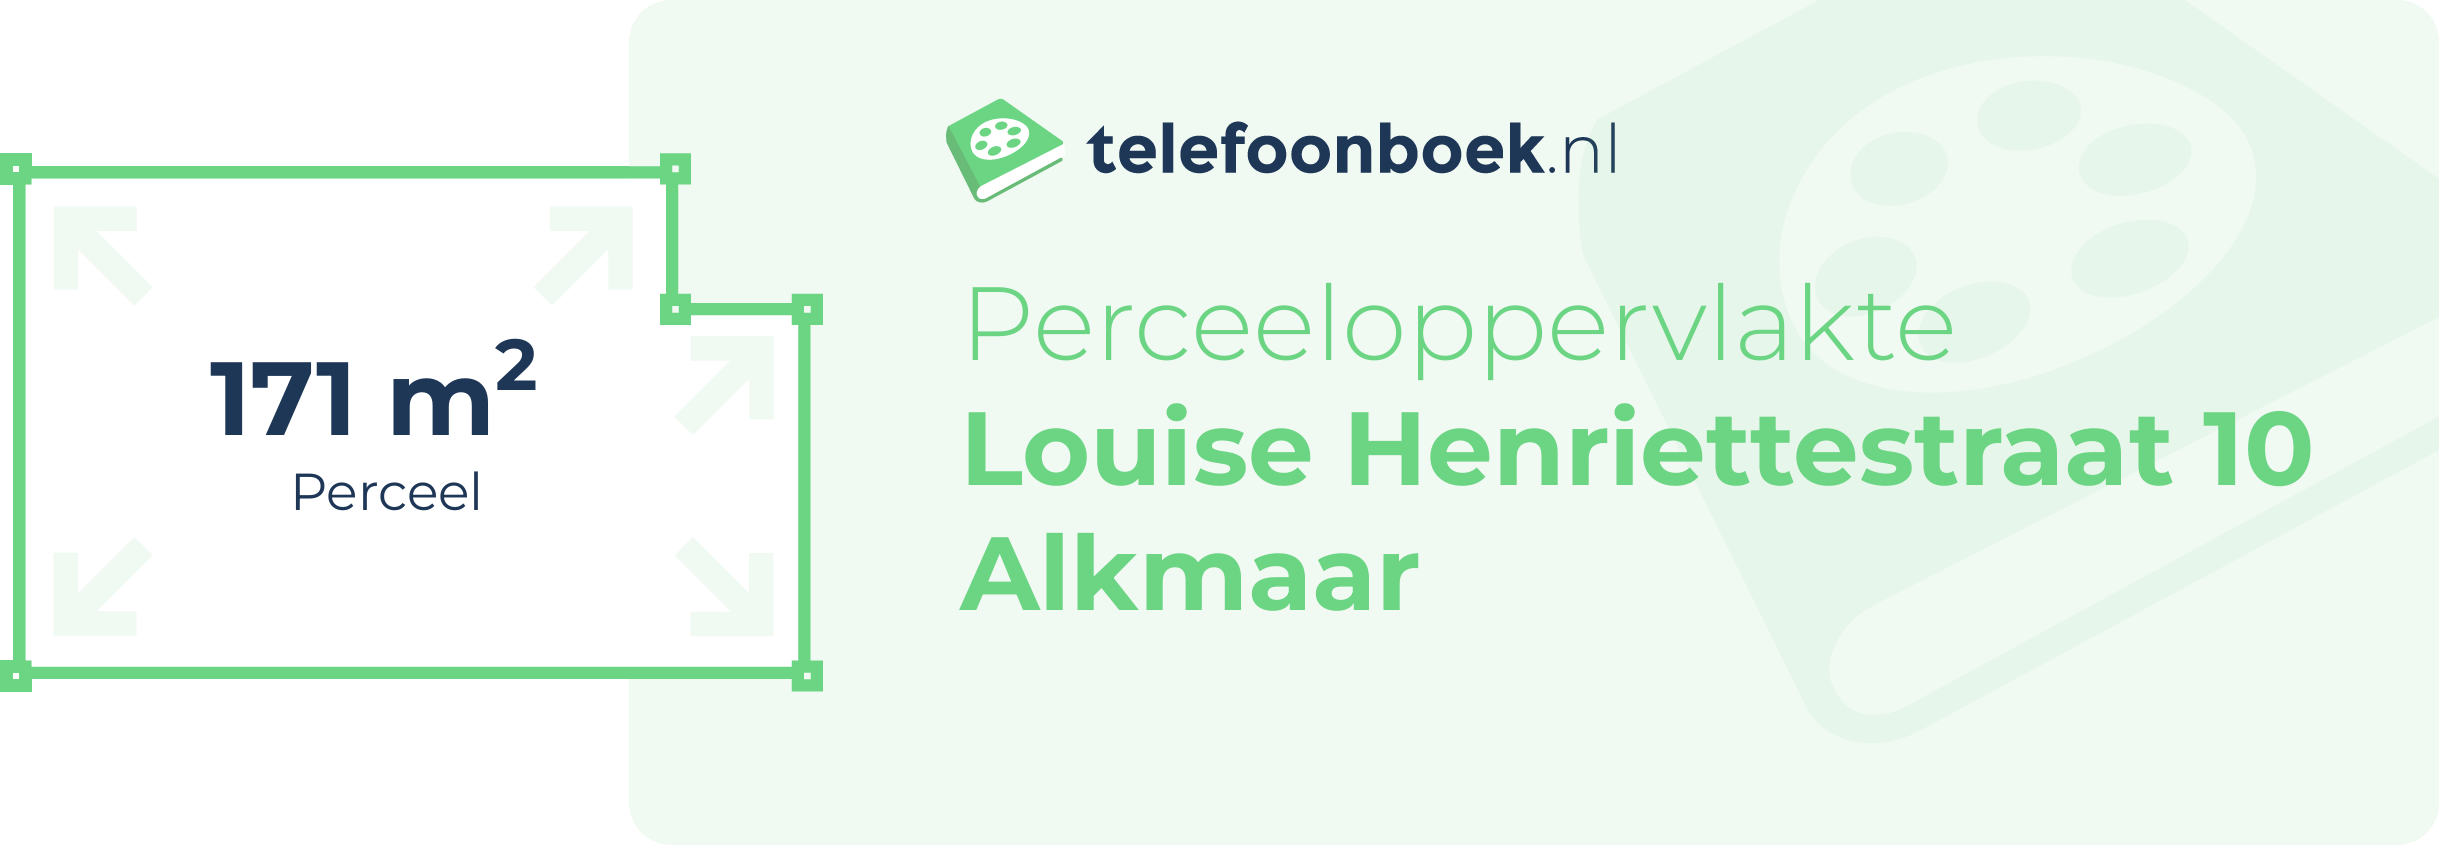 Perceeloppervlakte Louise Henriettestraat 10 Alkmaar